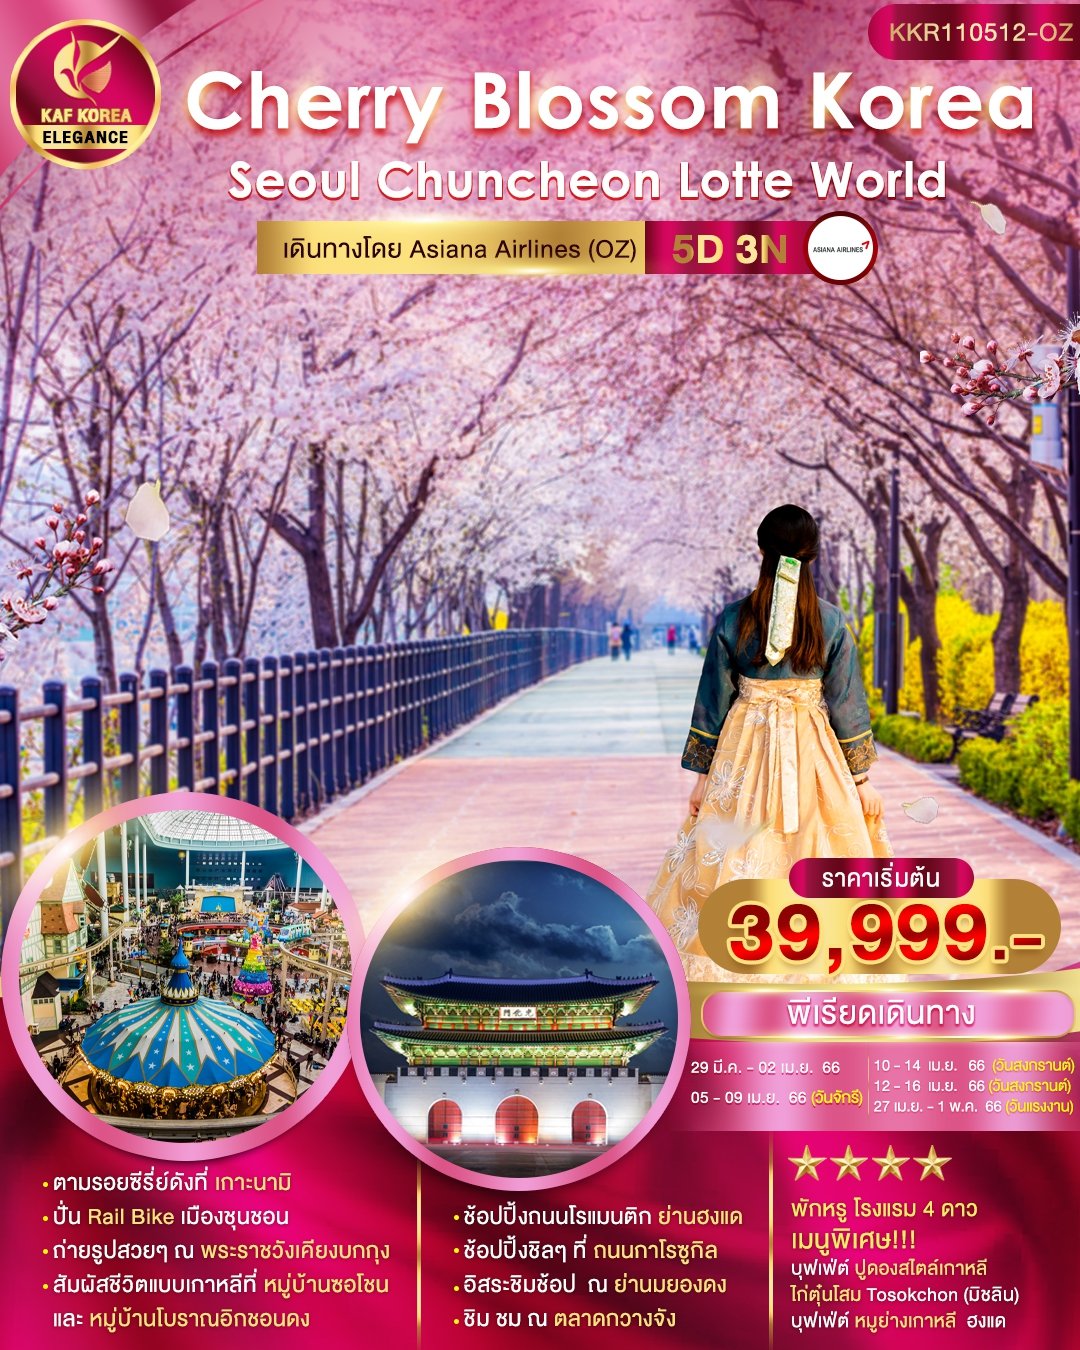 โปรแกรมทัวร์เกาหลี Cherry Blossom Korea 5 วัน 3 คืน